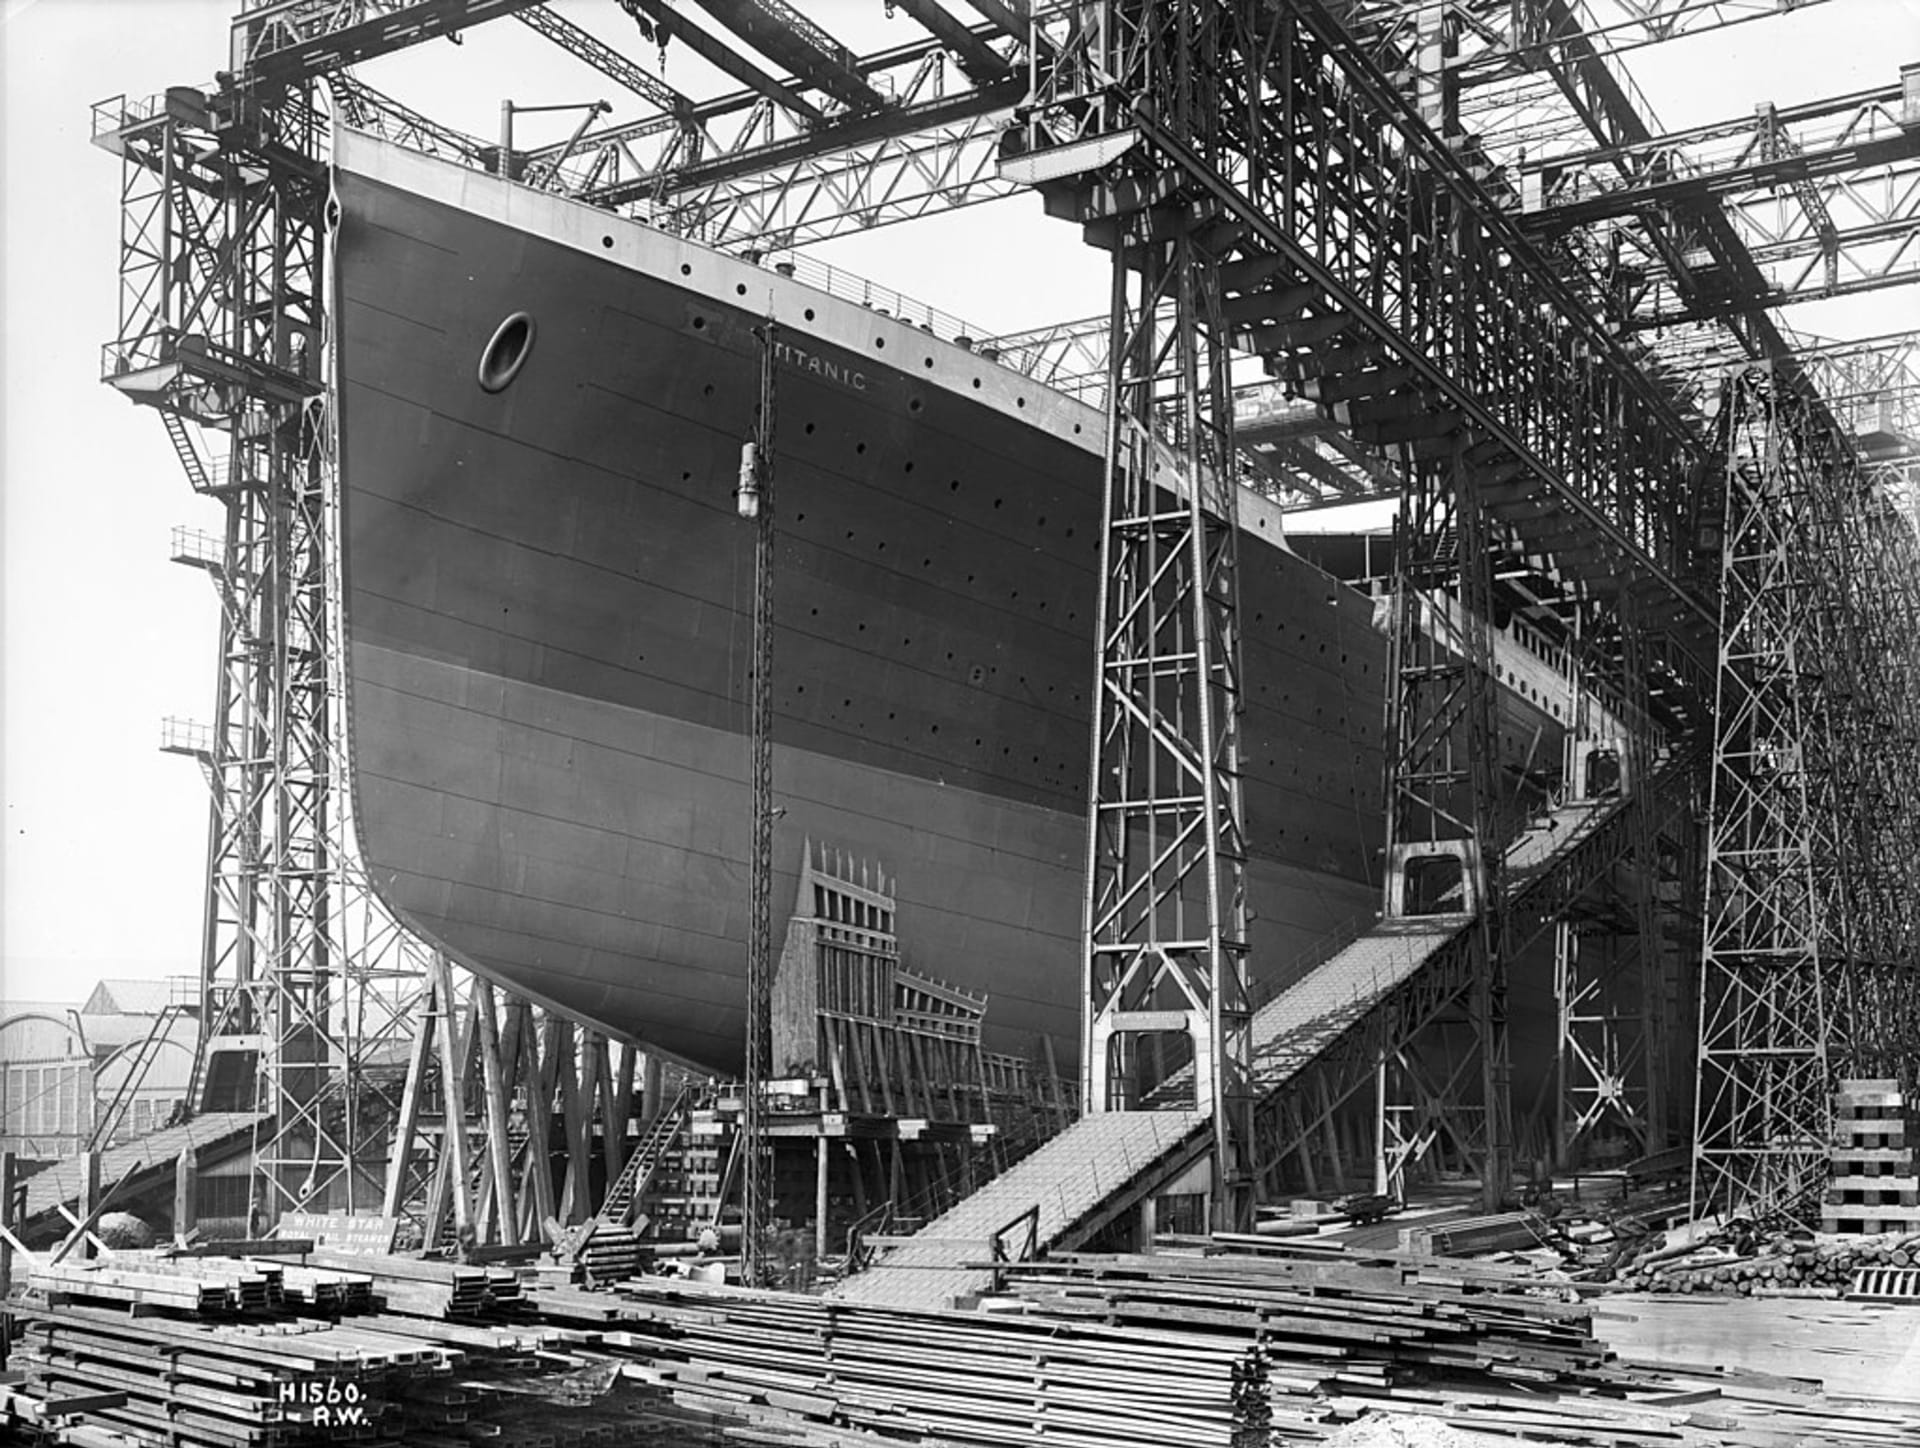 Strůjci Titanicu chtěli vytvořit nejrychlejší loď světa